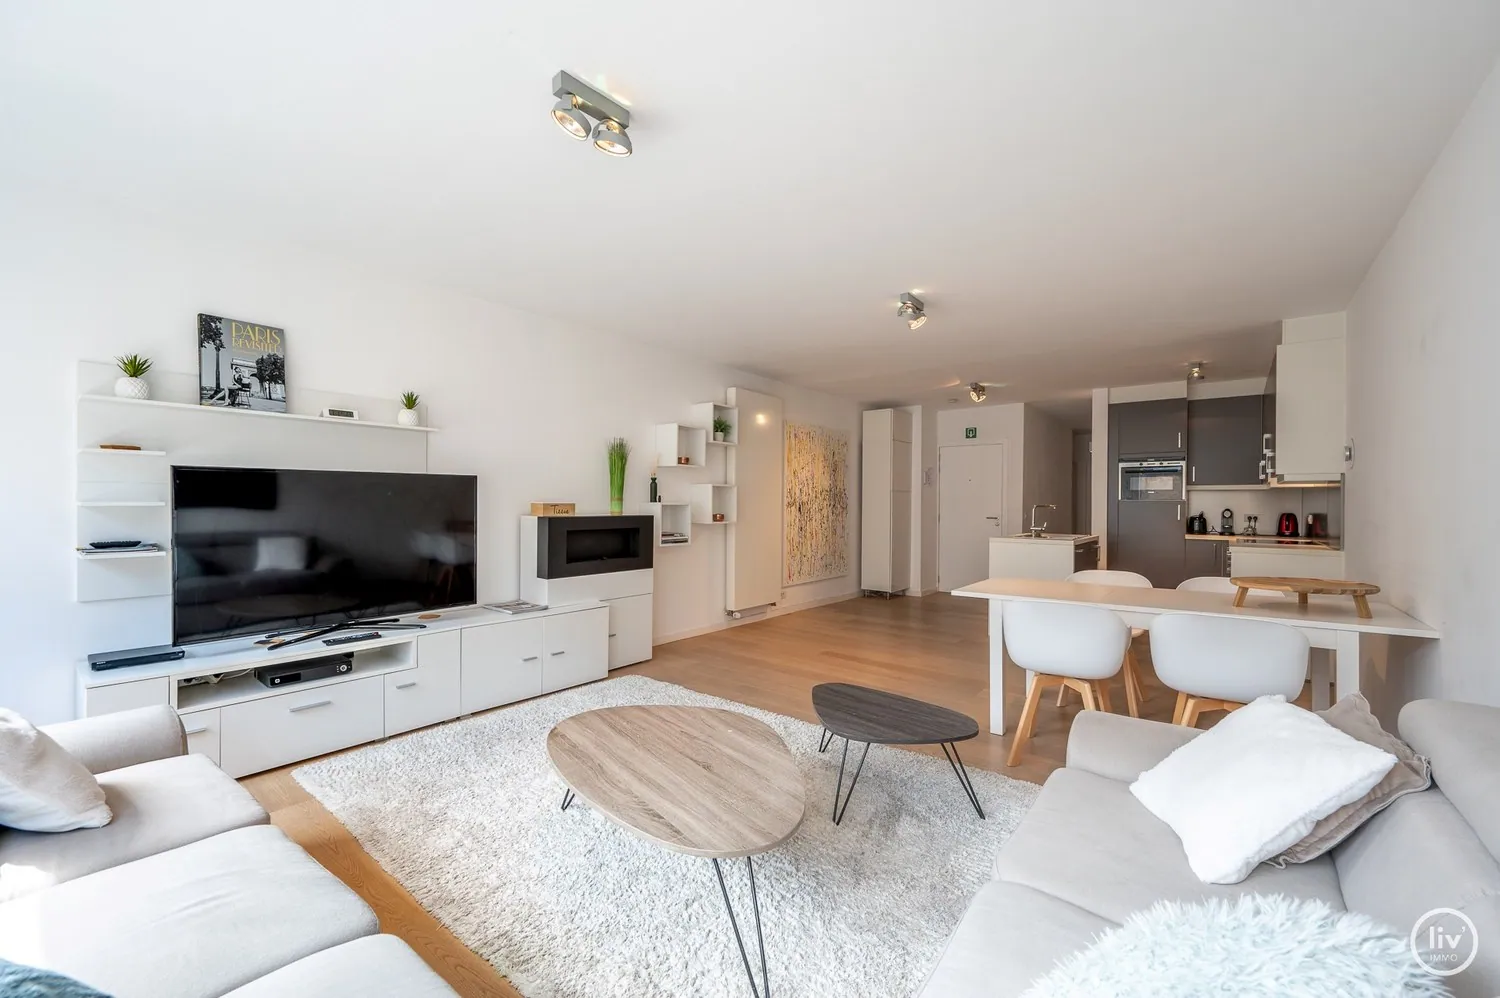 Appartement 2 chambres à coucher situé central au Leopoldlaan, près de digue à Knokke. 